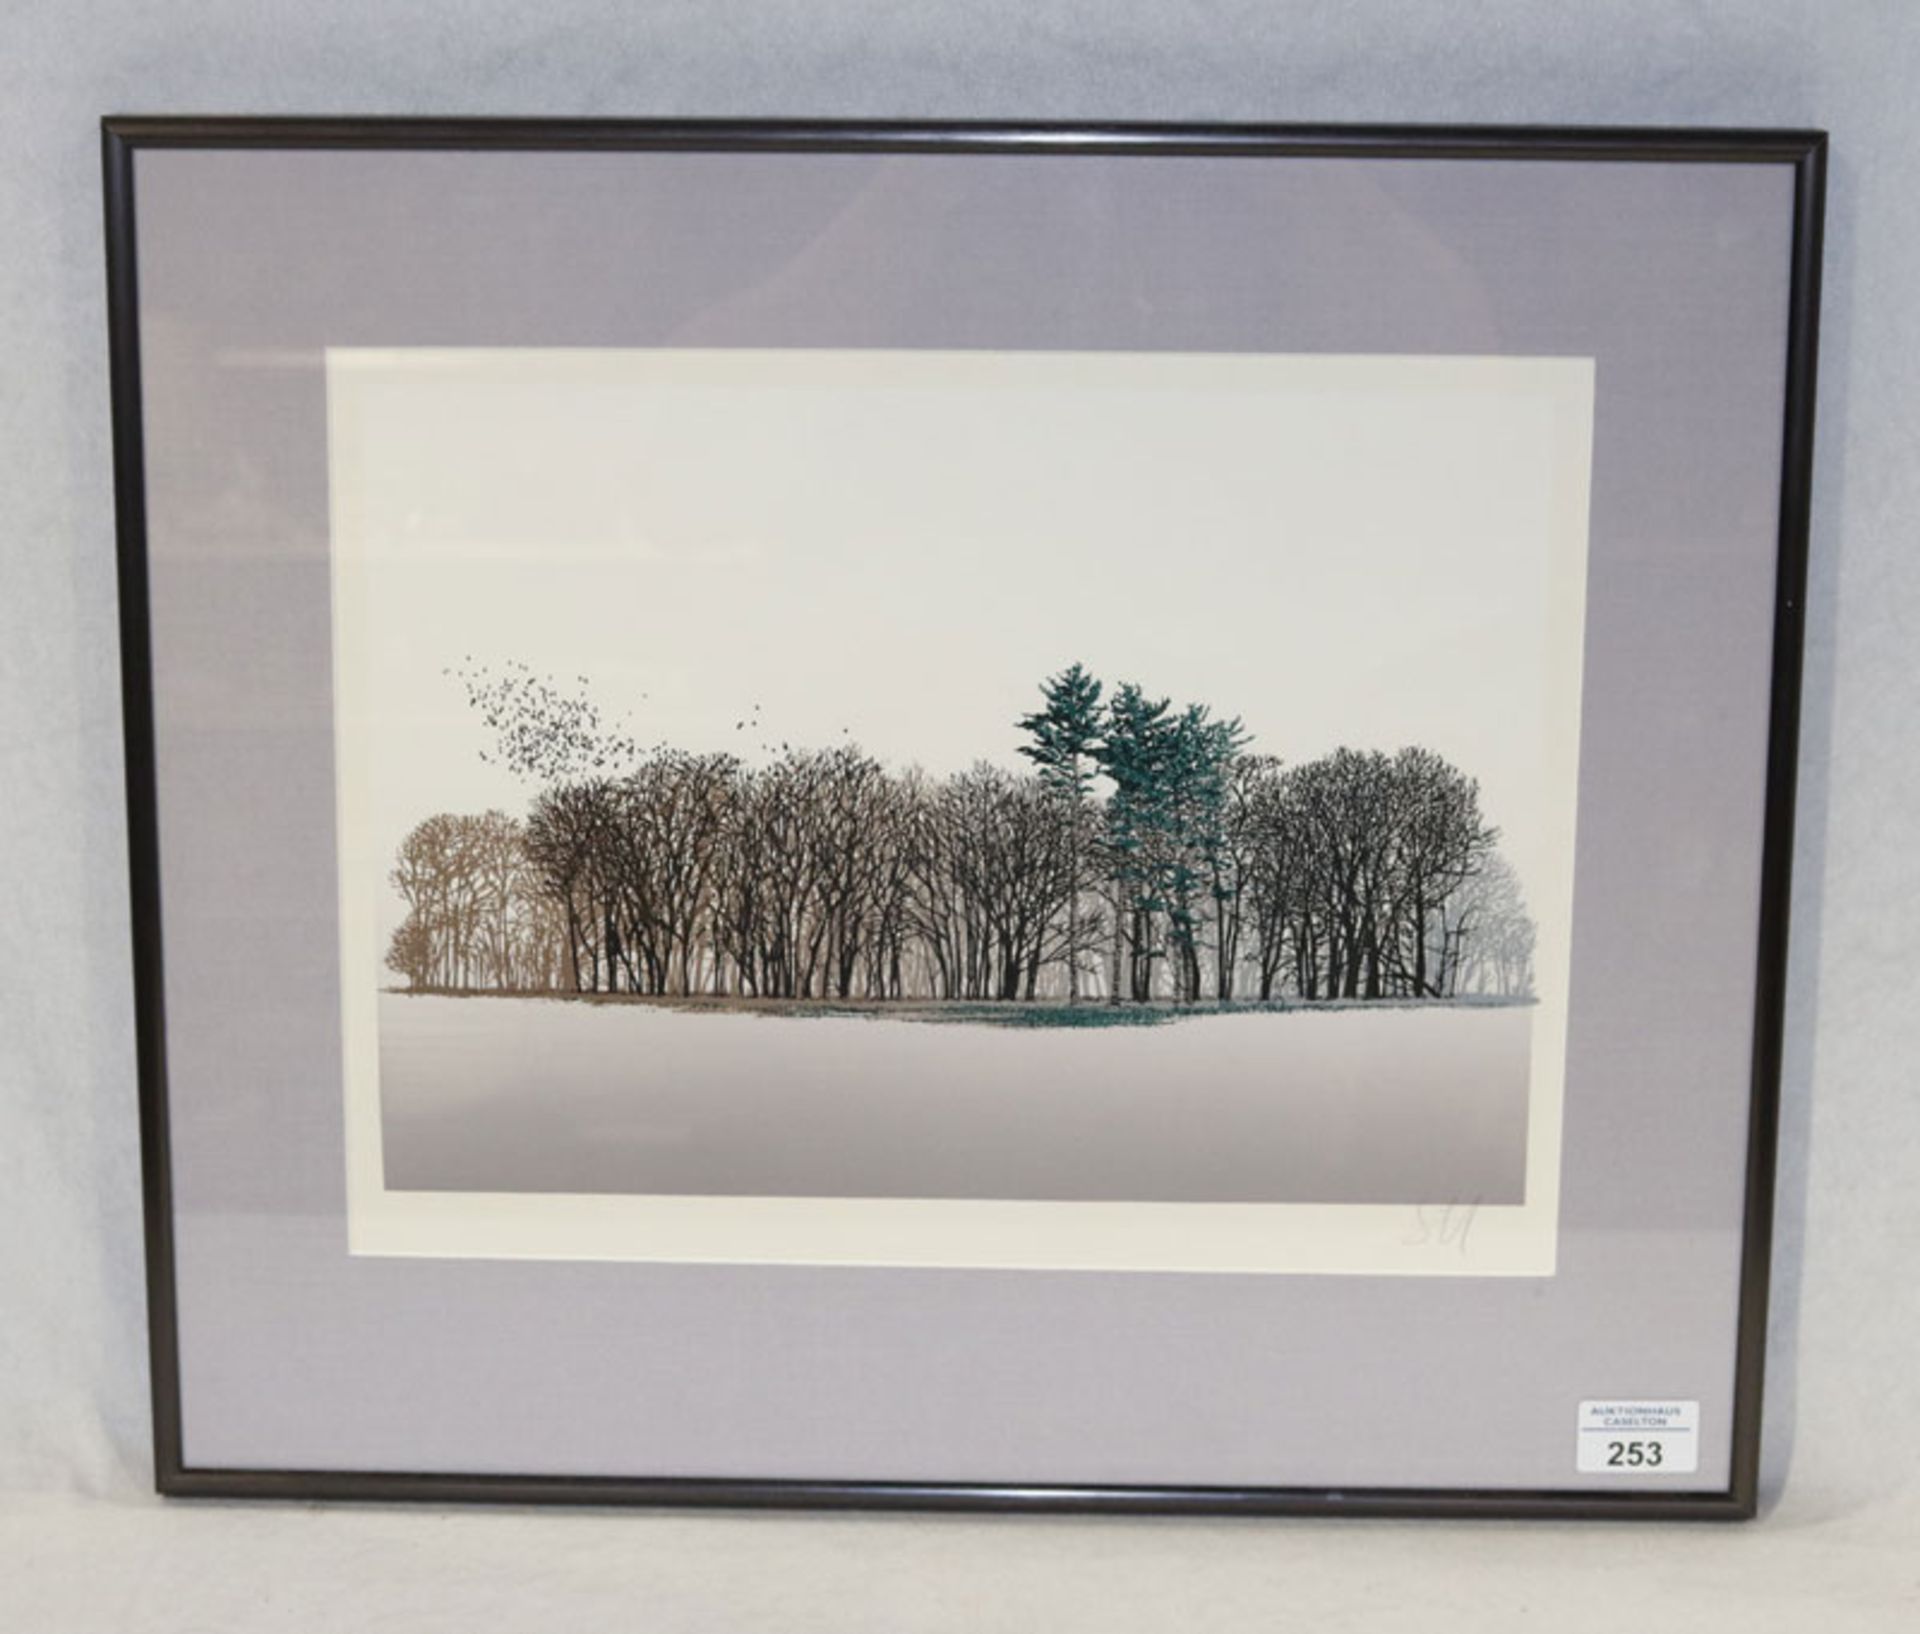 Druck 'Bäume im Winter', monogrammiert SU, mit Passepartout unter Glas gerahmt, incl. Rahmen 44 cm x